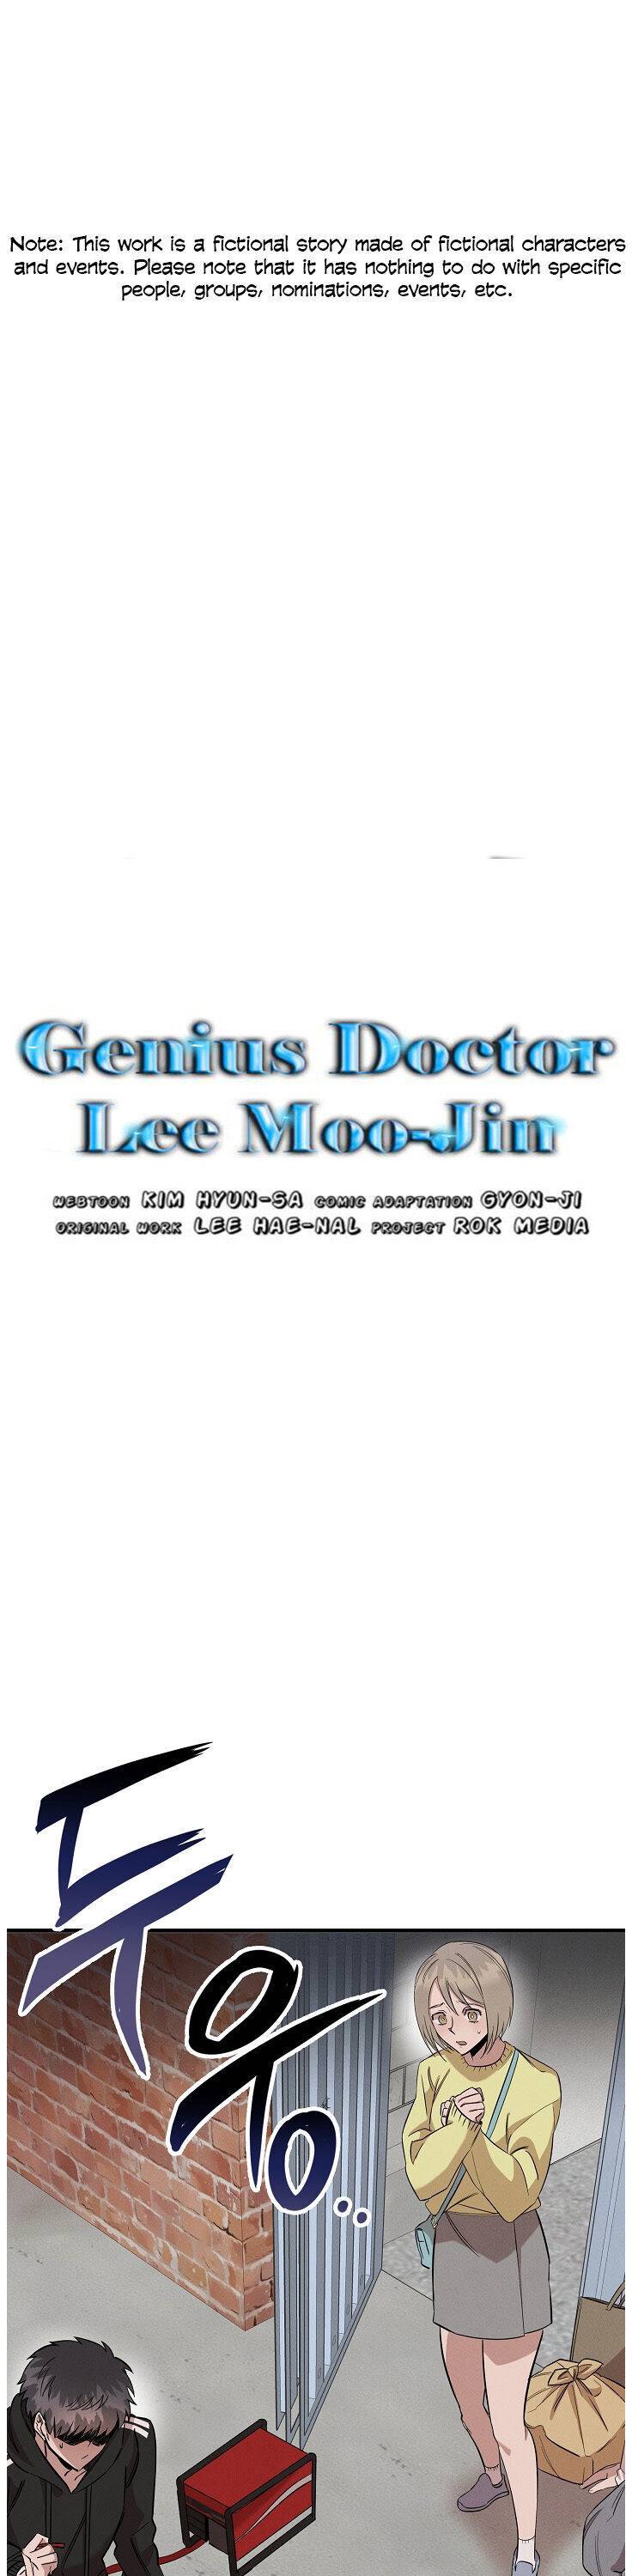 Genius Doctor Lee Moo-Jin - Page 2